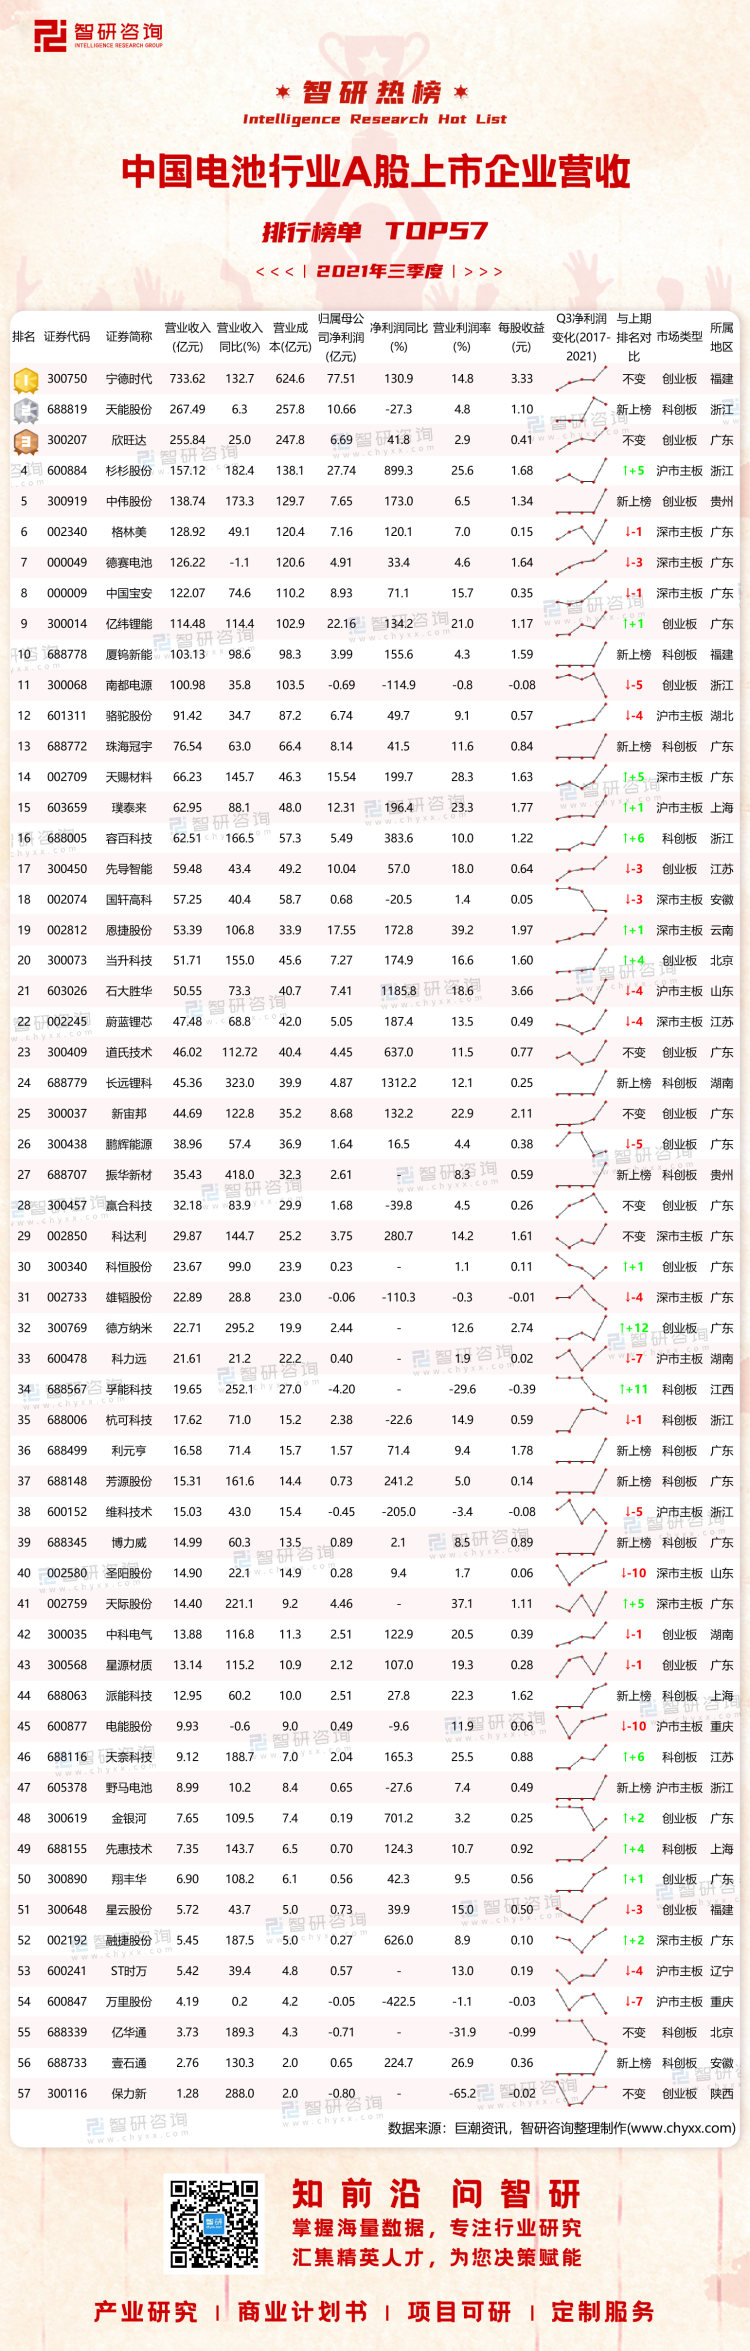 0324：2021年三季度中国电池行业A股上市企业营收排行榜-水印带二维码-有网址（程燕萍）